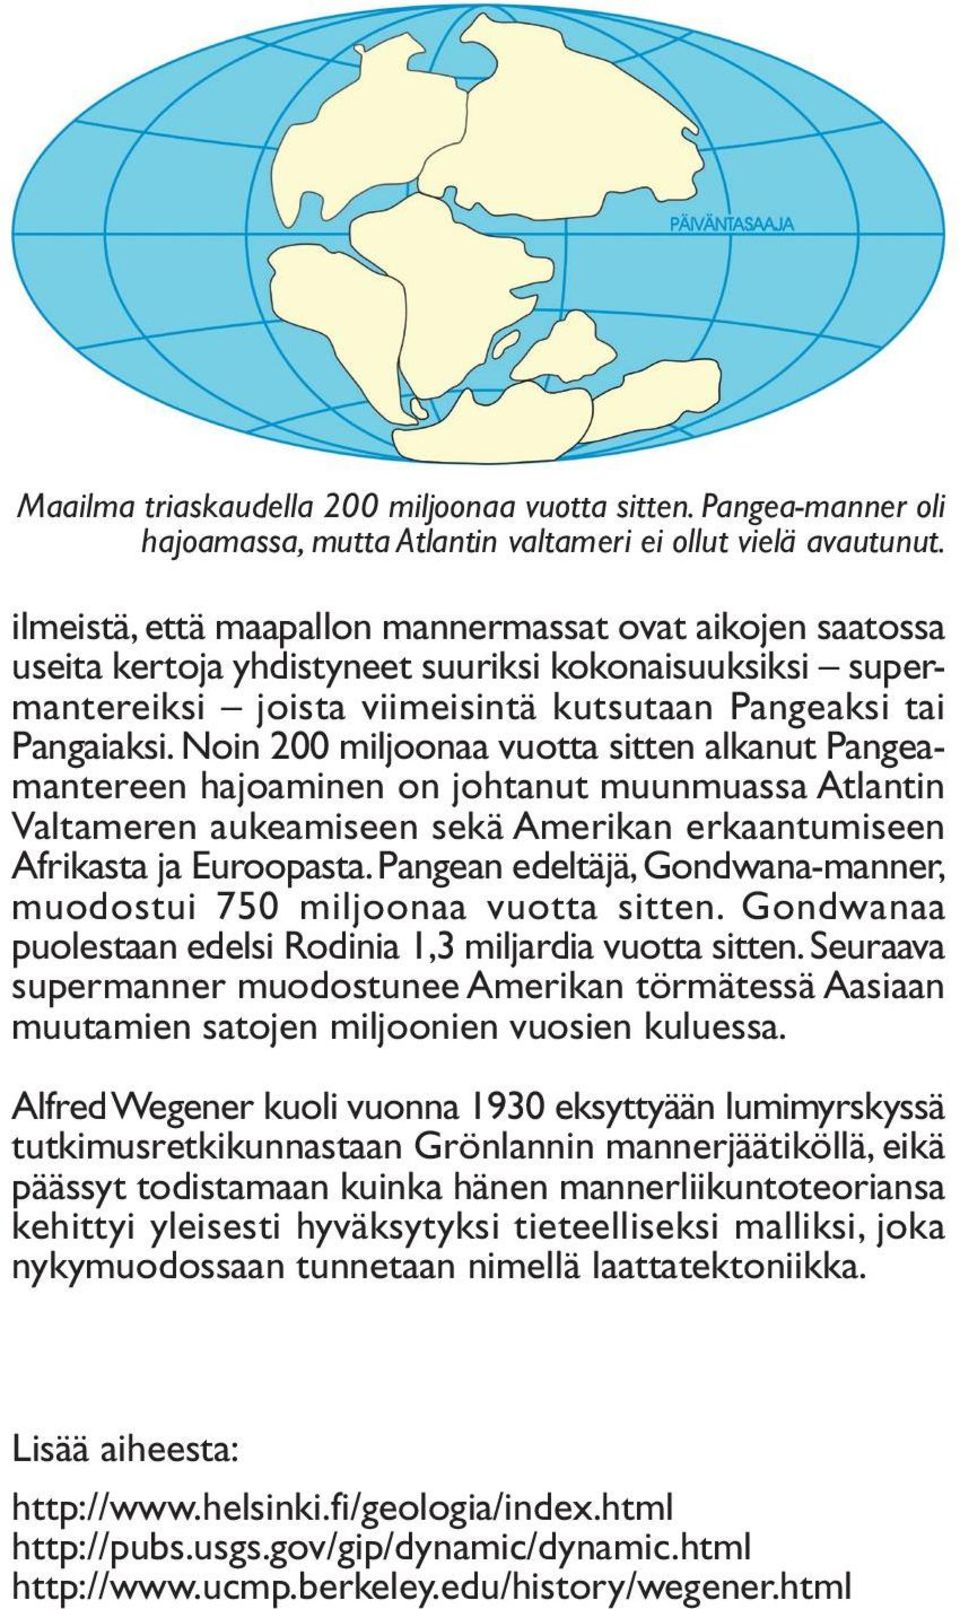 Noin 200 miljoonaa vuotta sitten alkanut Pangeamantereen hajoaminen on johtanut muunmuassa Atlantin Valtameren aukeamiseen sekä Amerikan erkaantumiseen Afrikasta ja Euroopasta.